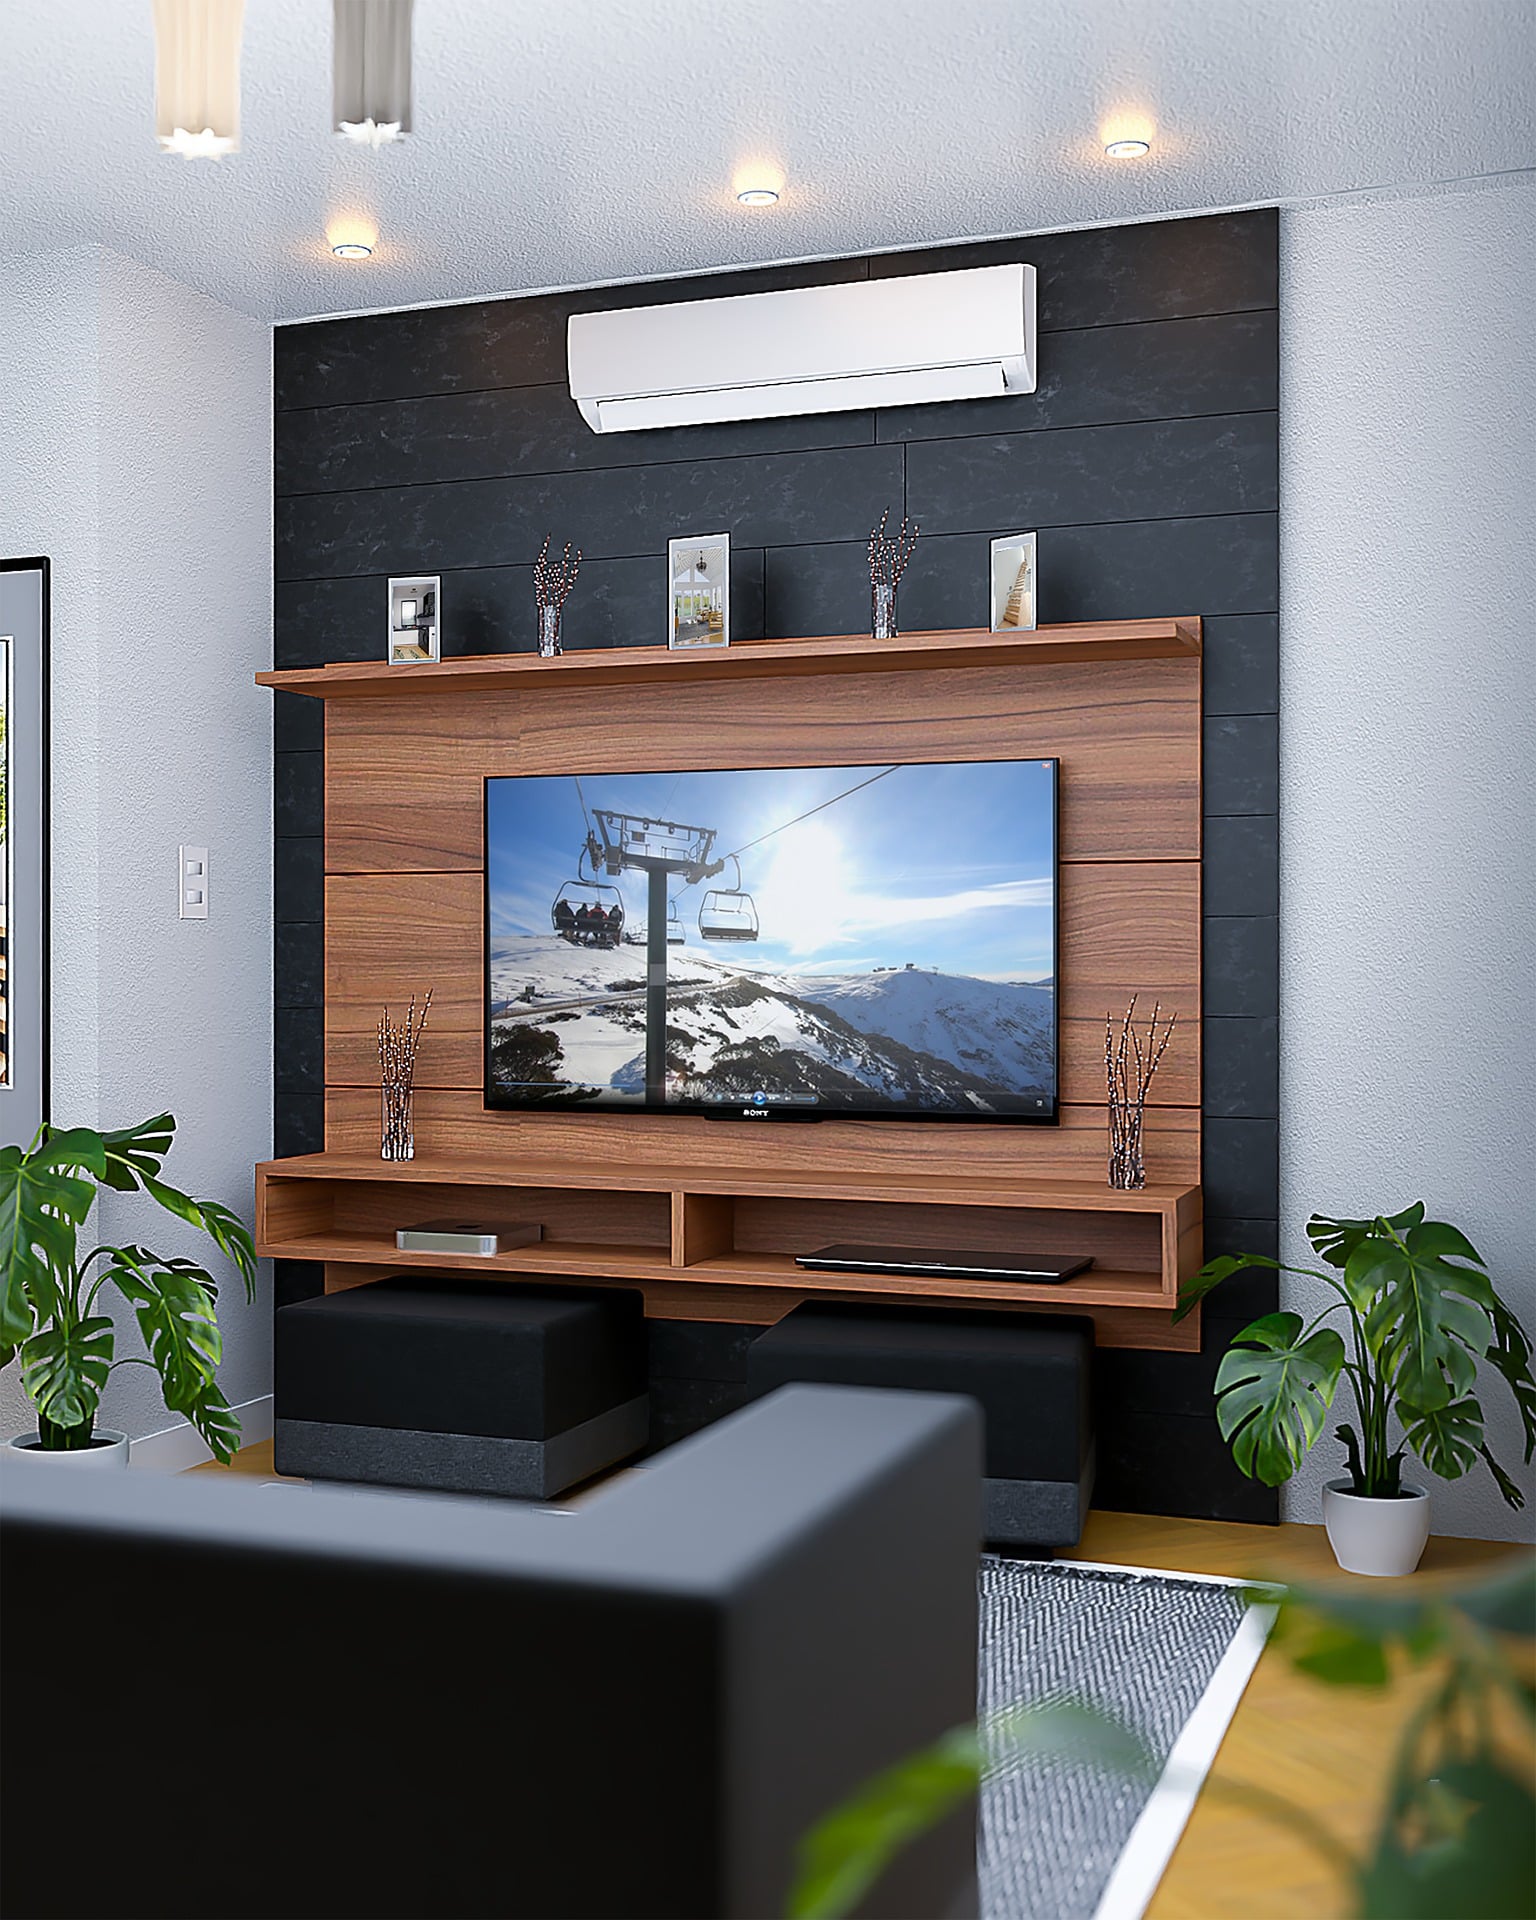 3 façons simples de connecter votre Smart TV à Internet